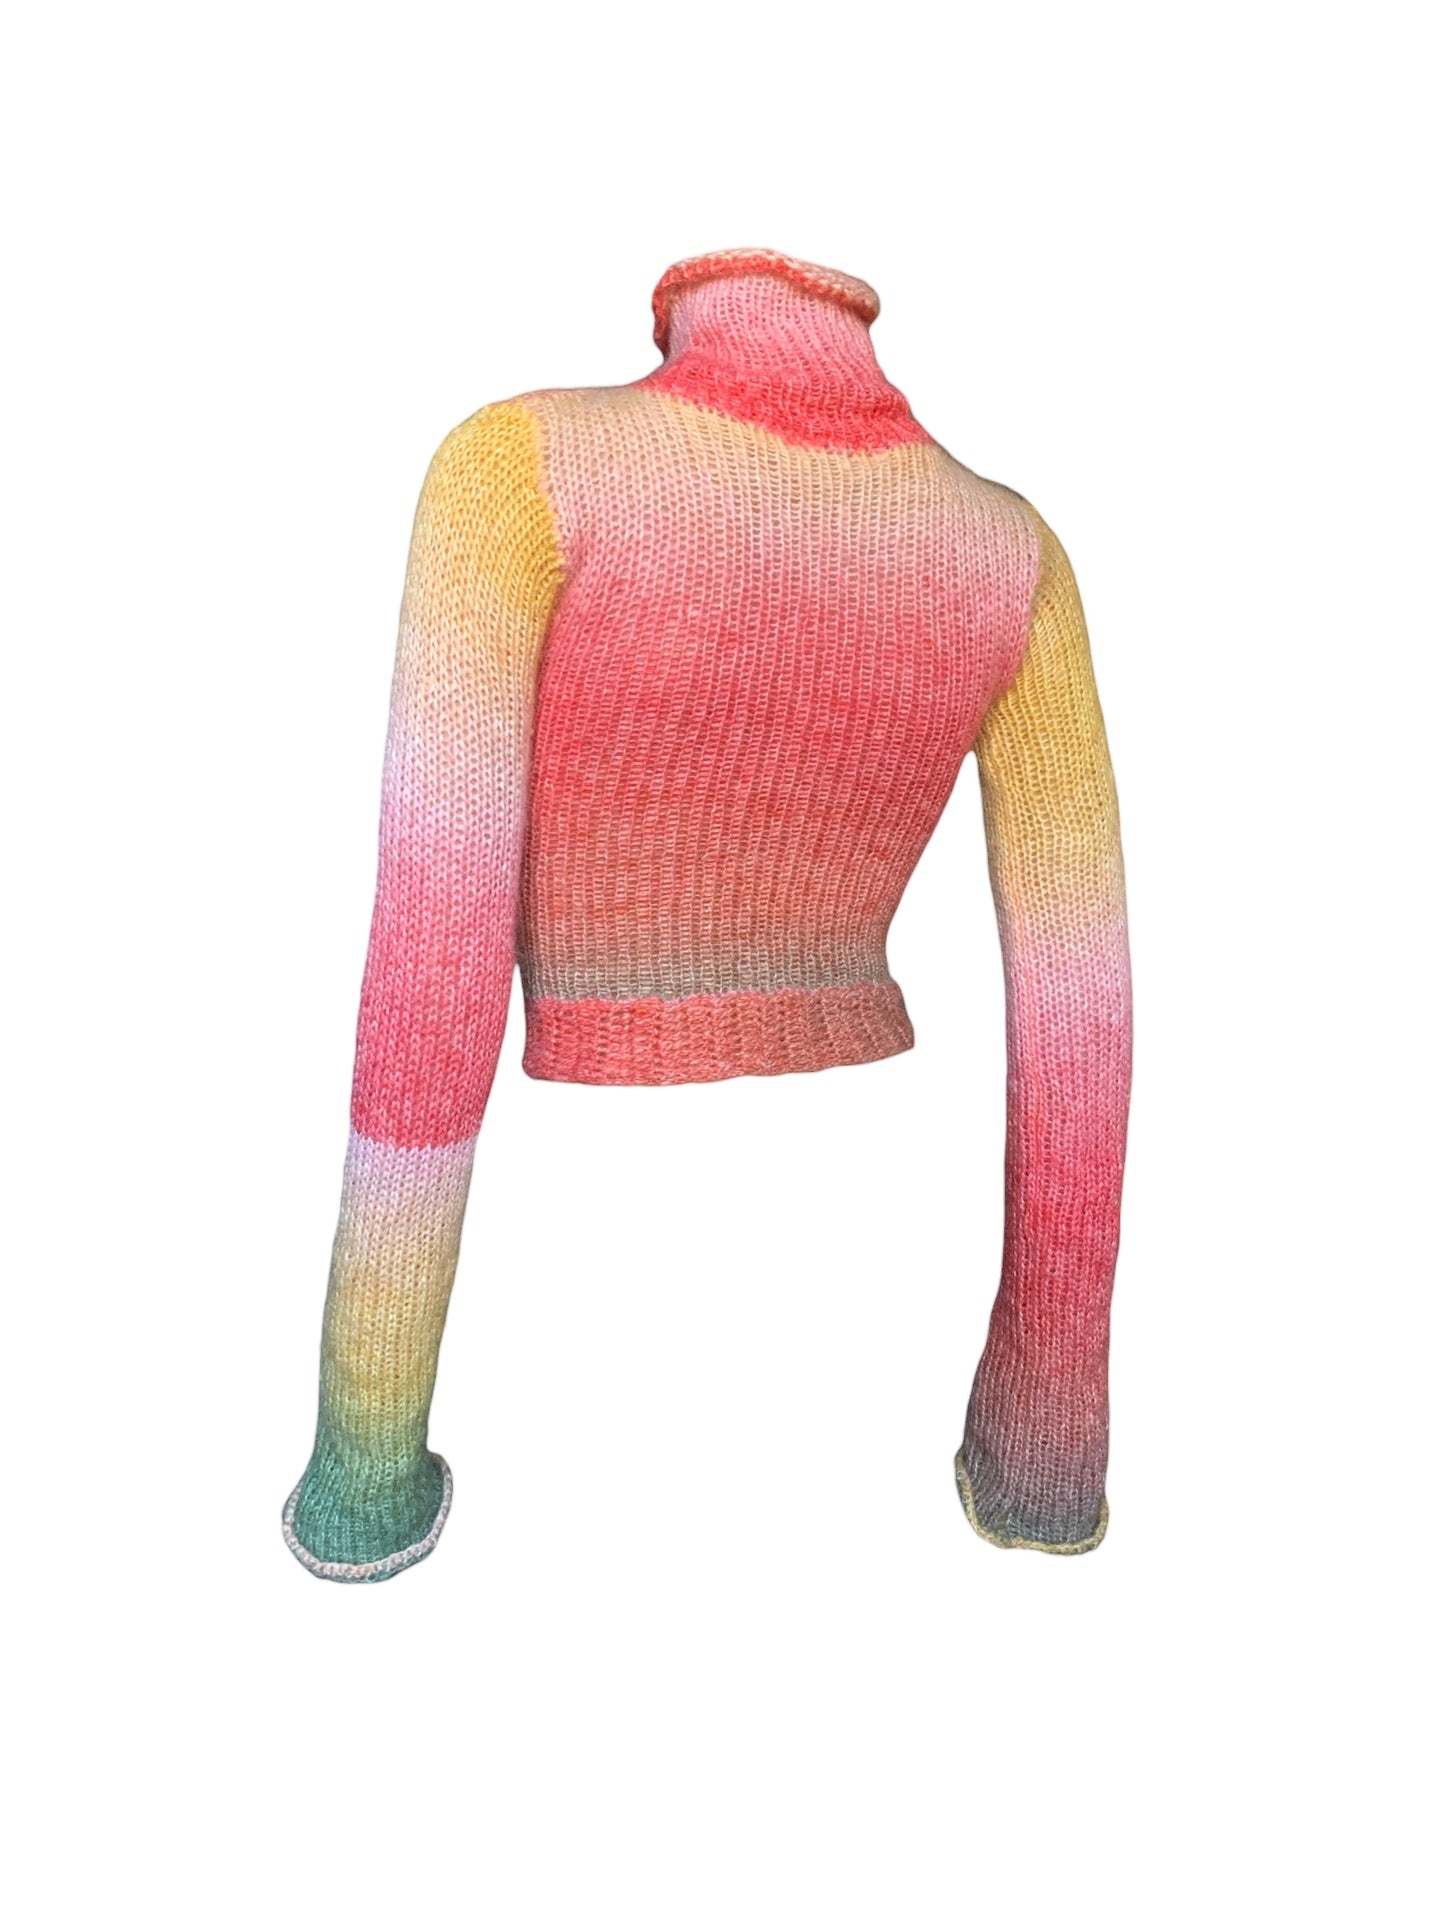 モヘアニットxかぎ針編みのセーター